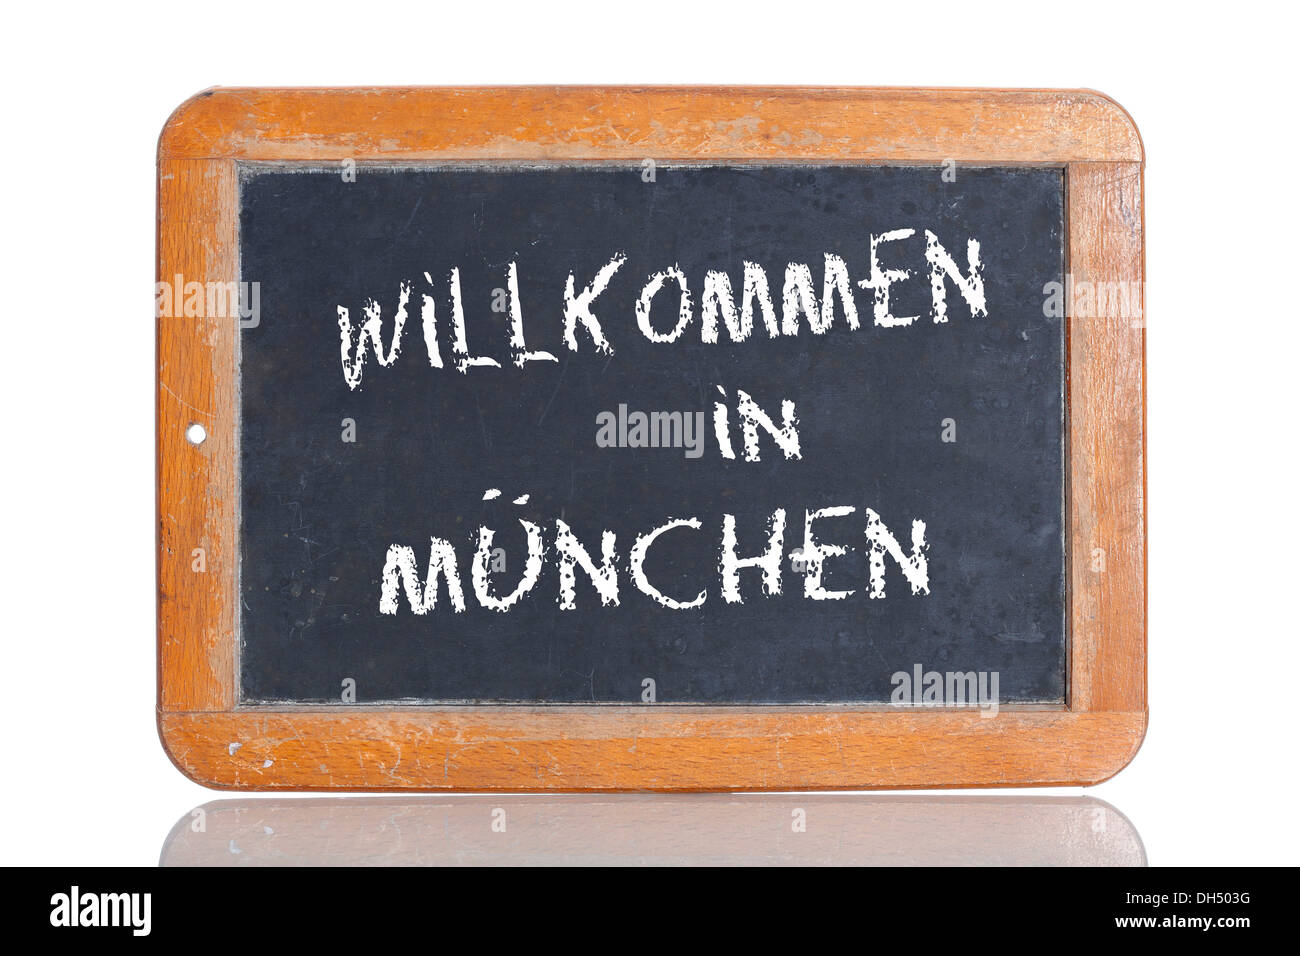 Alte Kreidetafel, Schriftzug "WILLKOMMEN IN München", Deutsch für "Willkommen zur MUNICH" Stockfoto